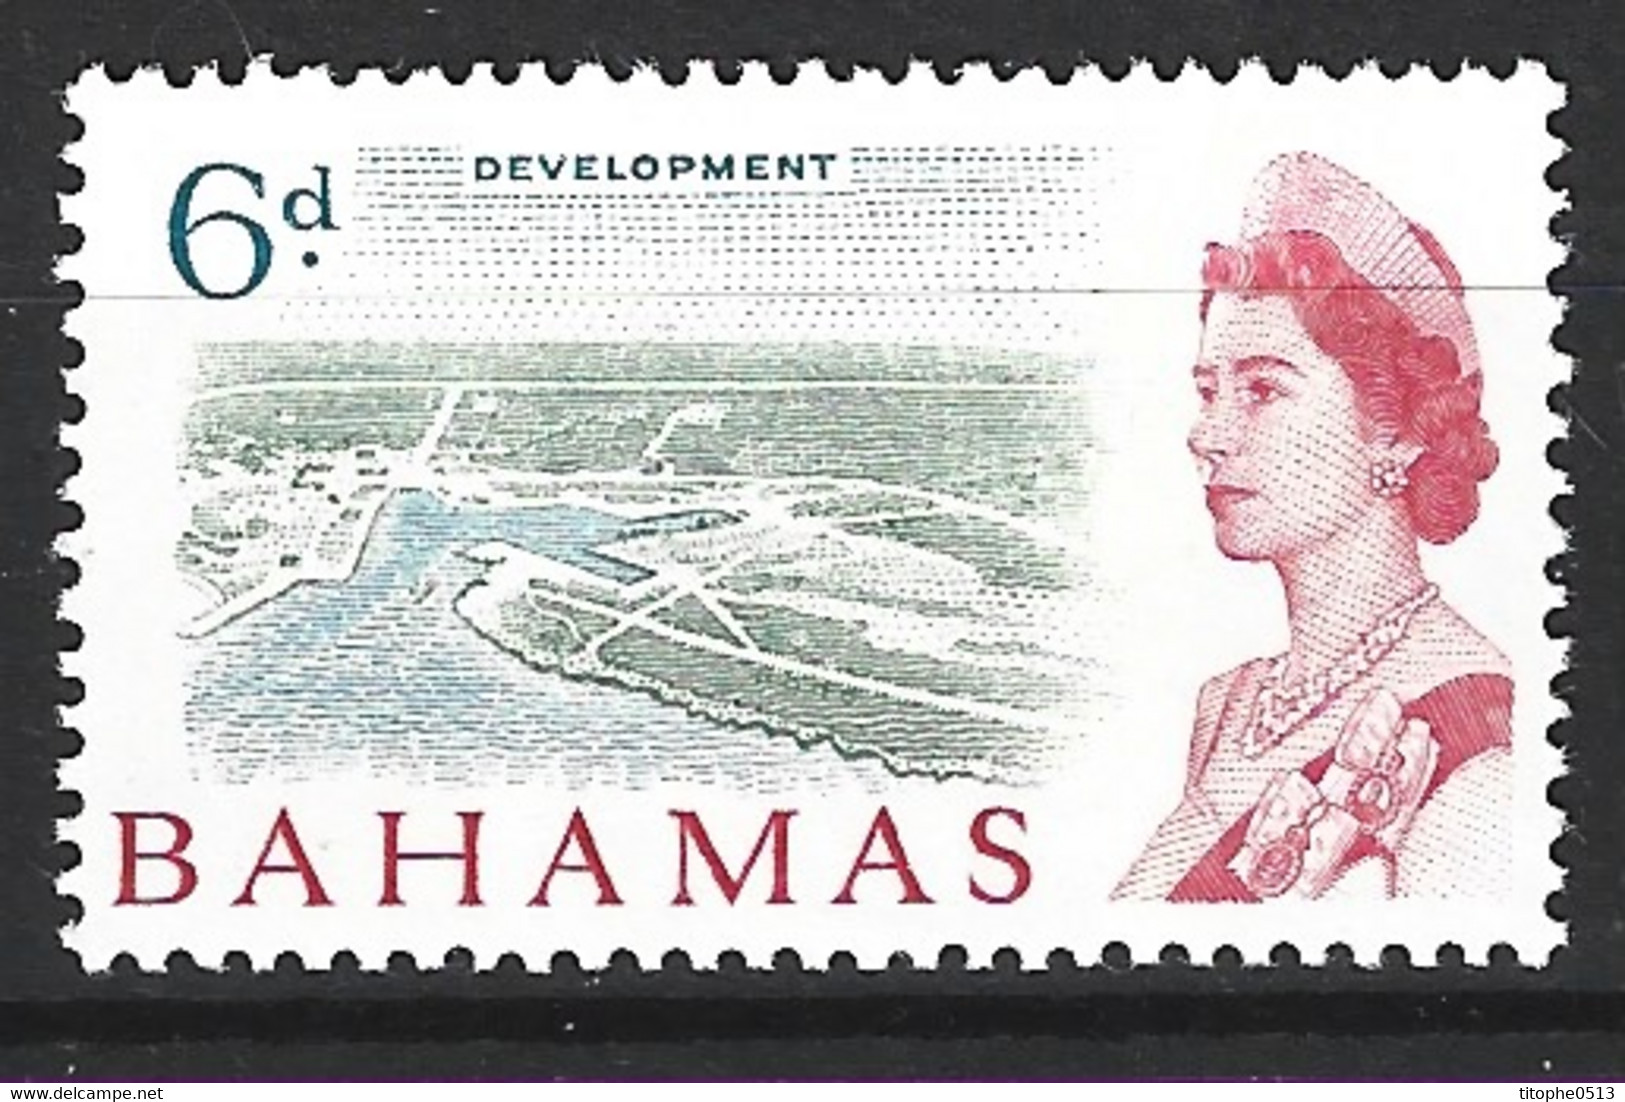 BAHAMAS. N°199 De 1965. Développement Des îles. - 1963-1973 Autonomie Interne